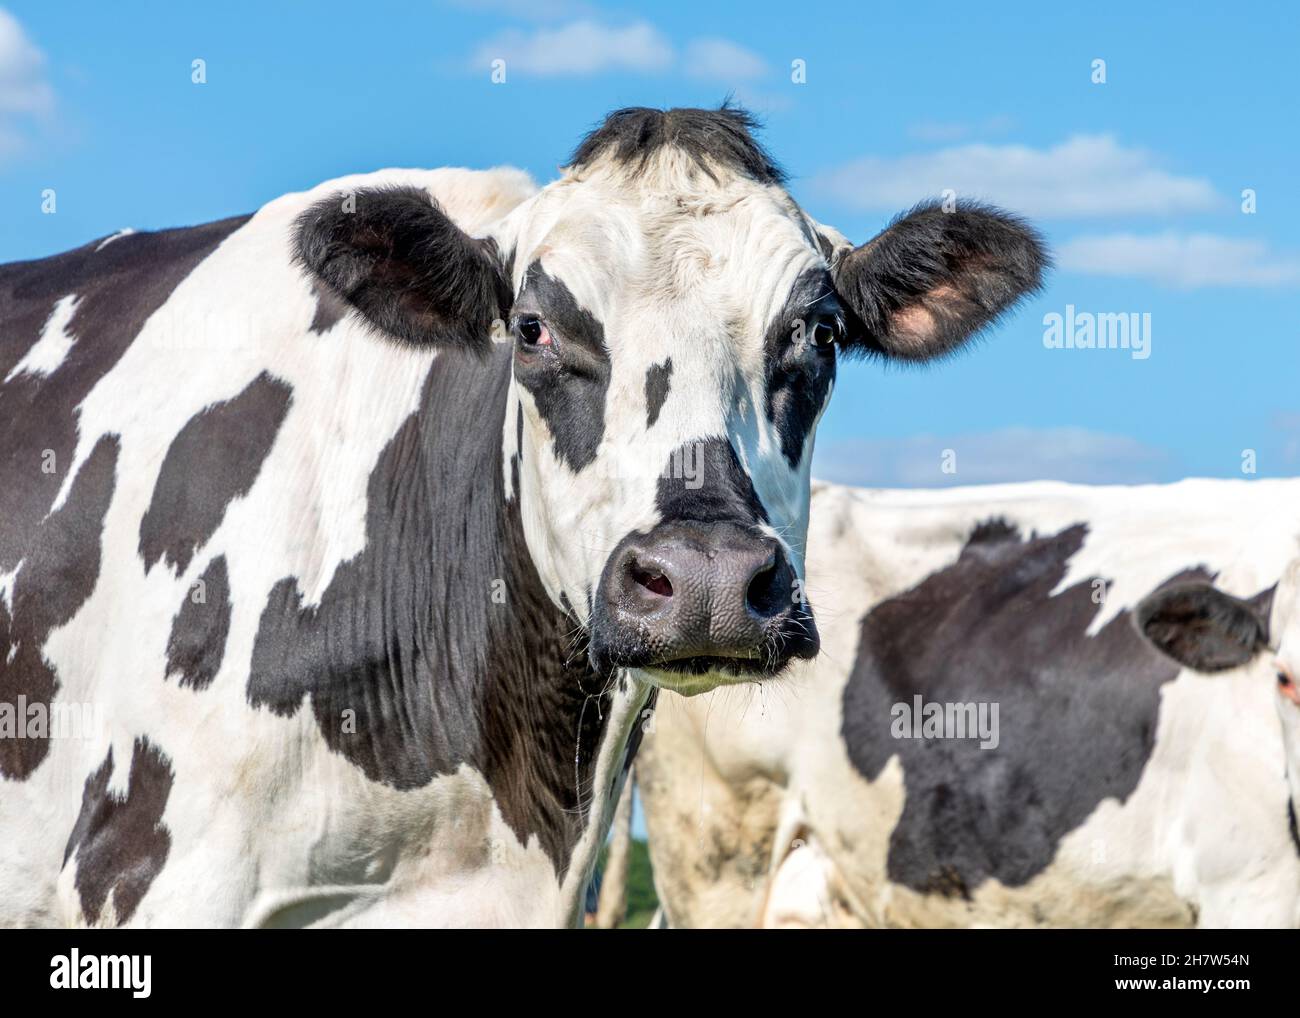 Vache mature, marbrée noir et blanc, grognement, nez noir, devant un ciel bleu Banque D'Images